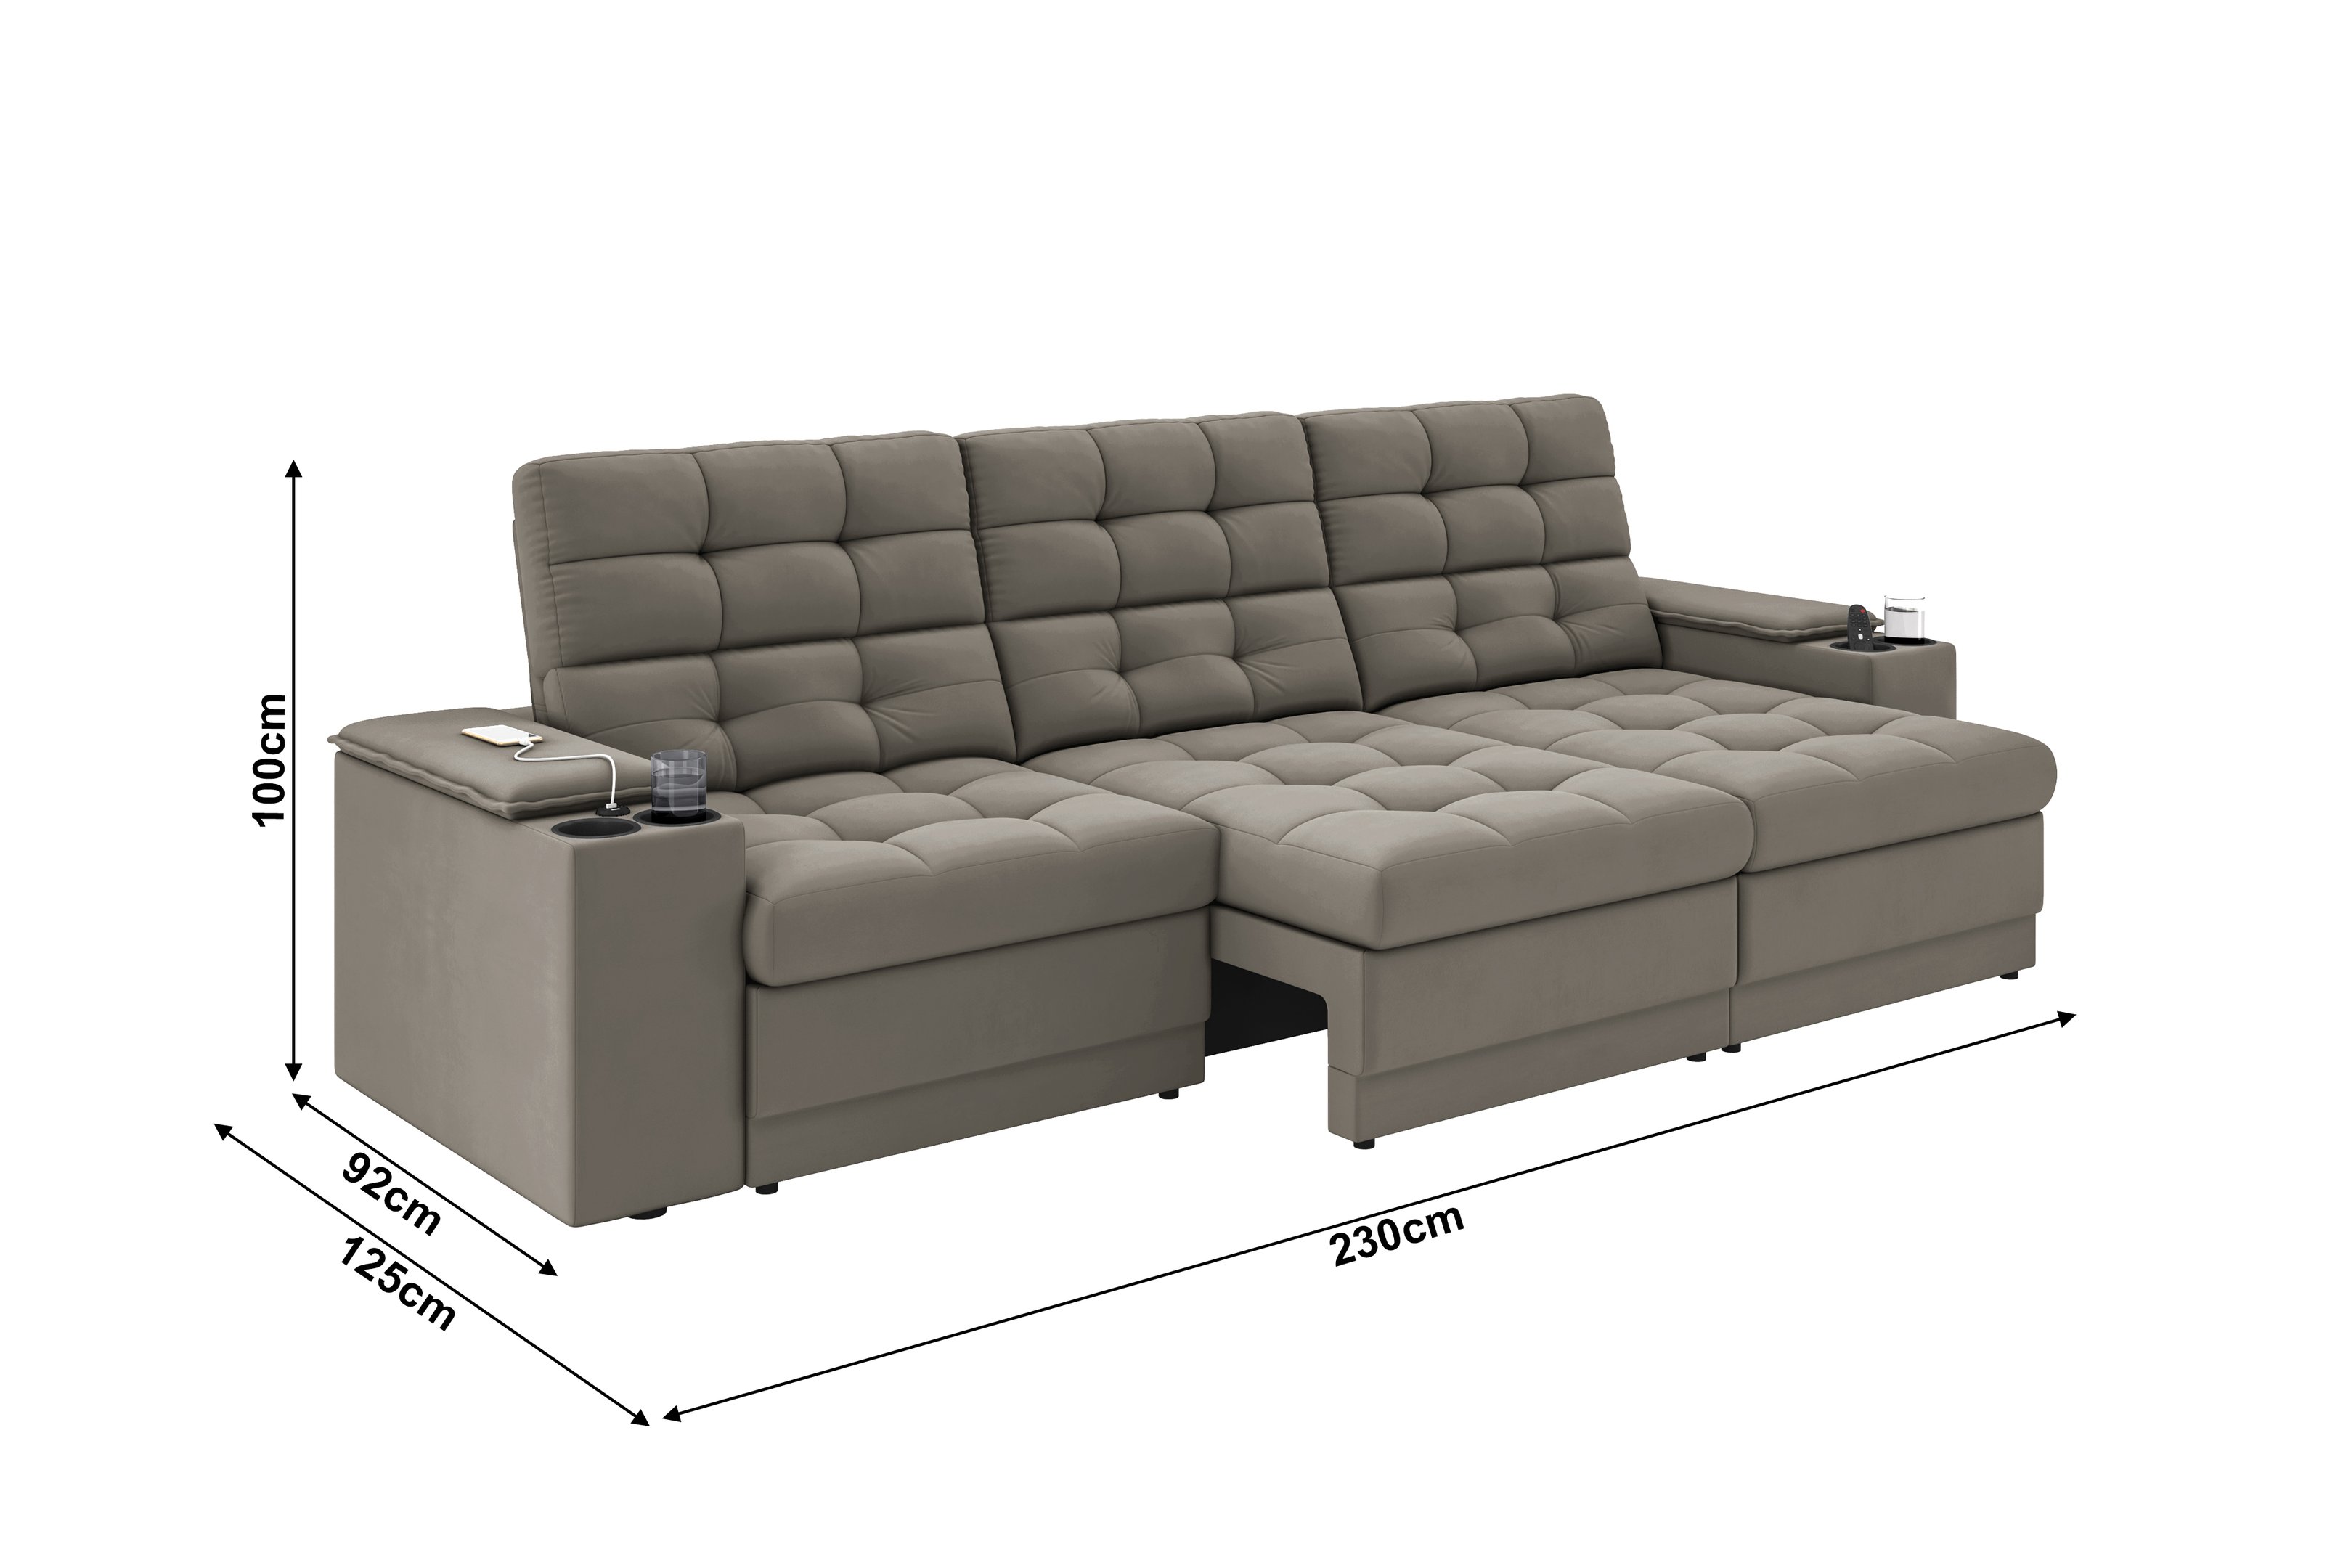 Sofá Confort Premium 2,30m Assento Retrátil/reclinável Porta Copos e Usb Suede Capuccino - Xflex - 2